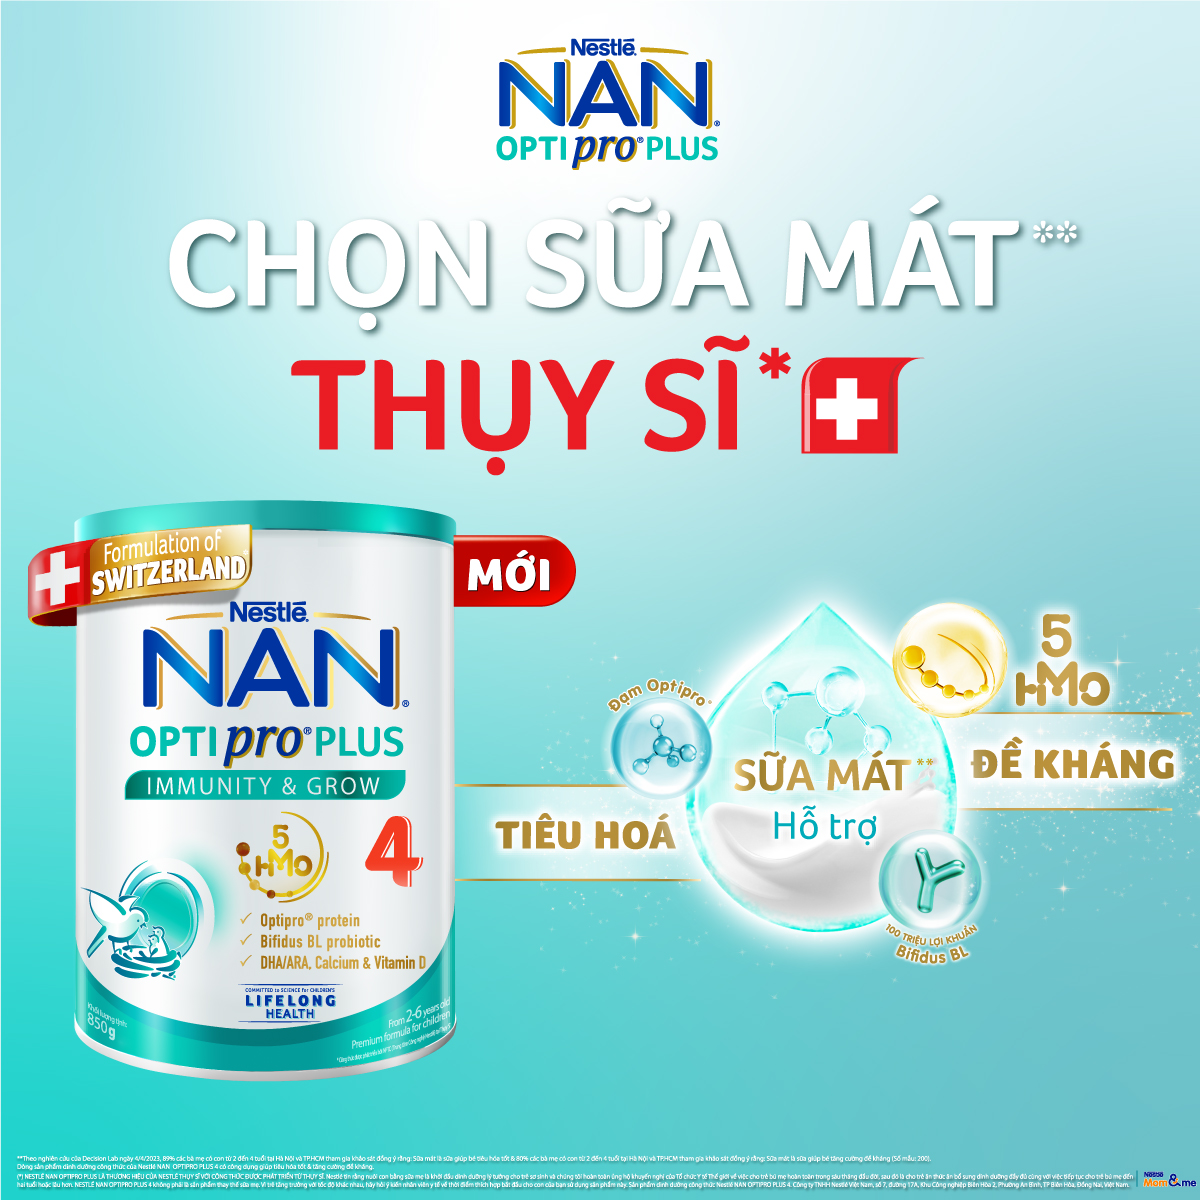 Sữa bột Nestlé NAN OPTIPRO PLUS 4 1500g/lon với 5HMO Giúp tiêu hóa tốt + Tăng cường đề kháng (2 - 6 tuổi) - Tặng Máy hút bụi mini